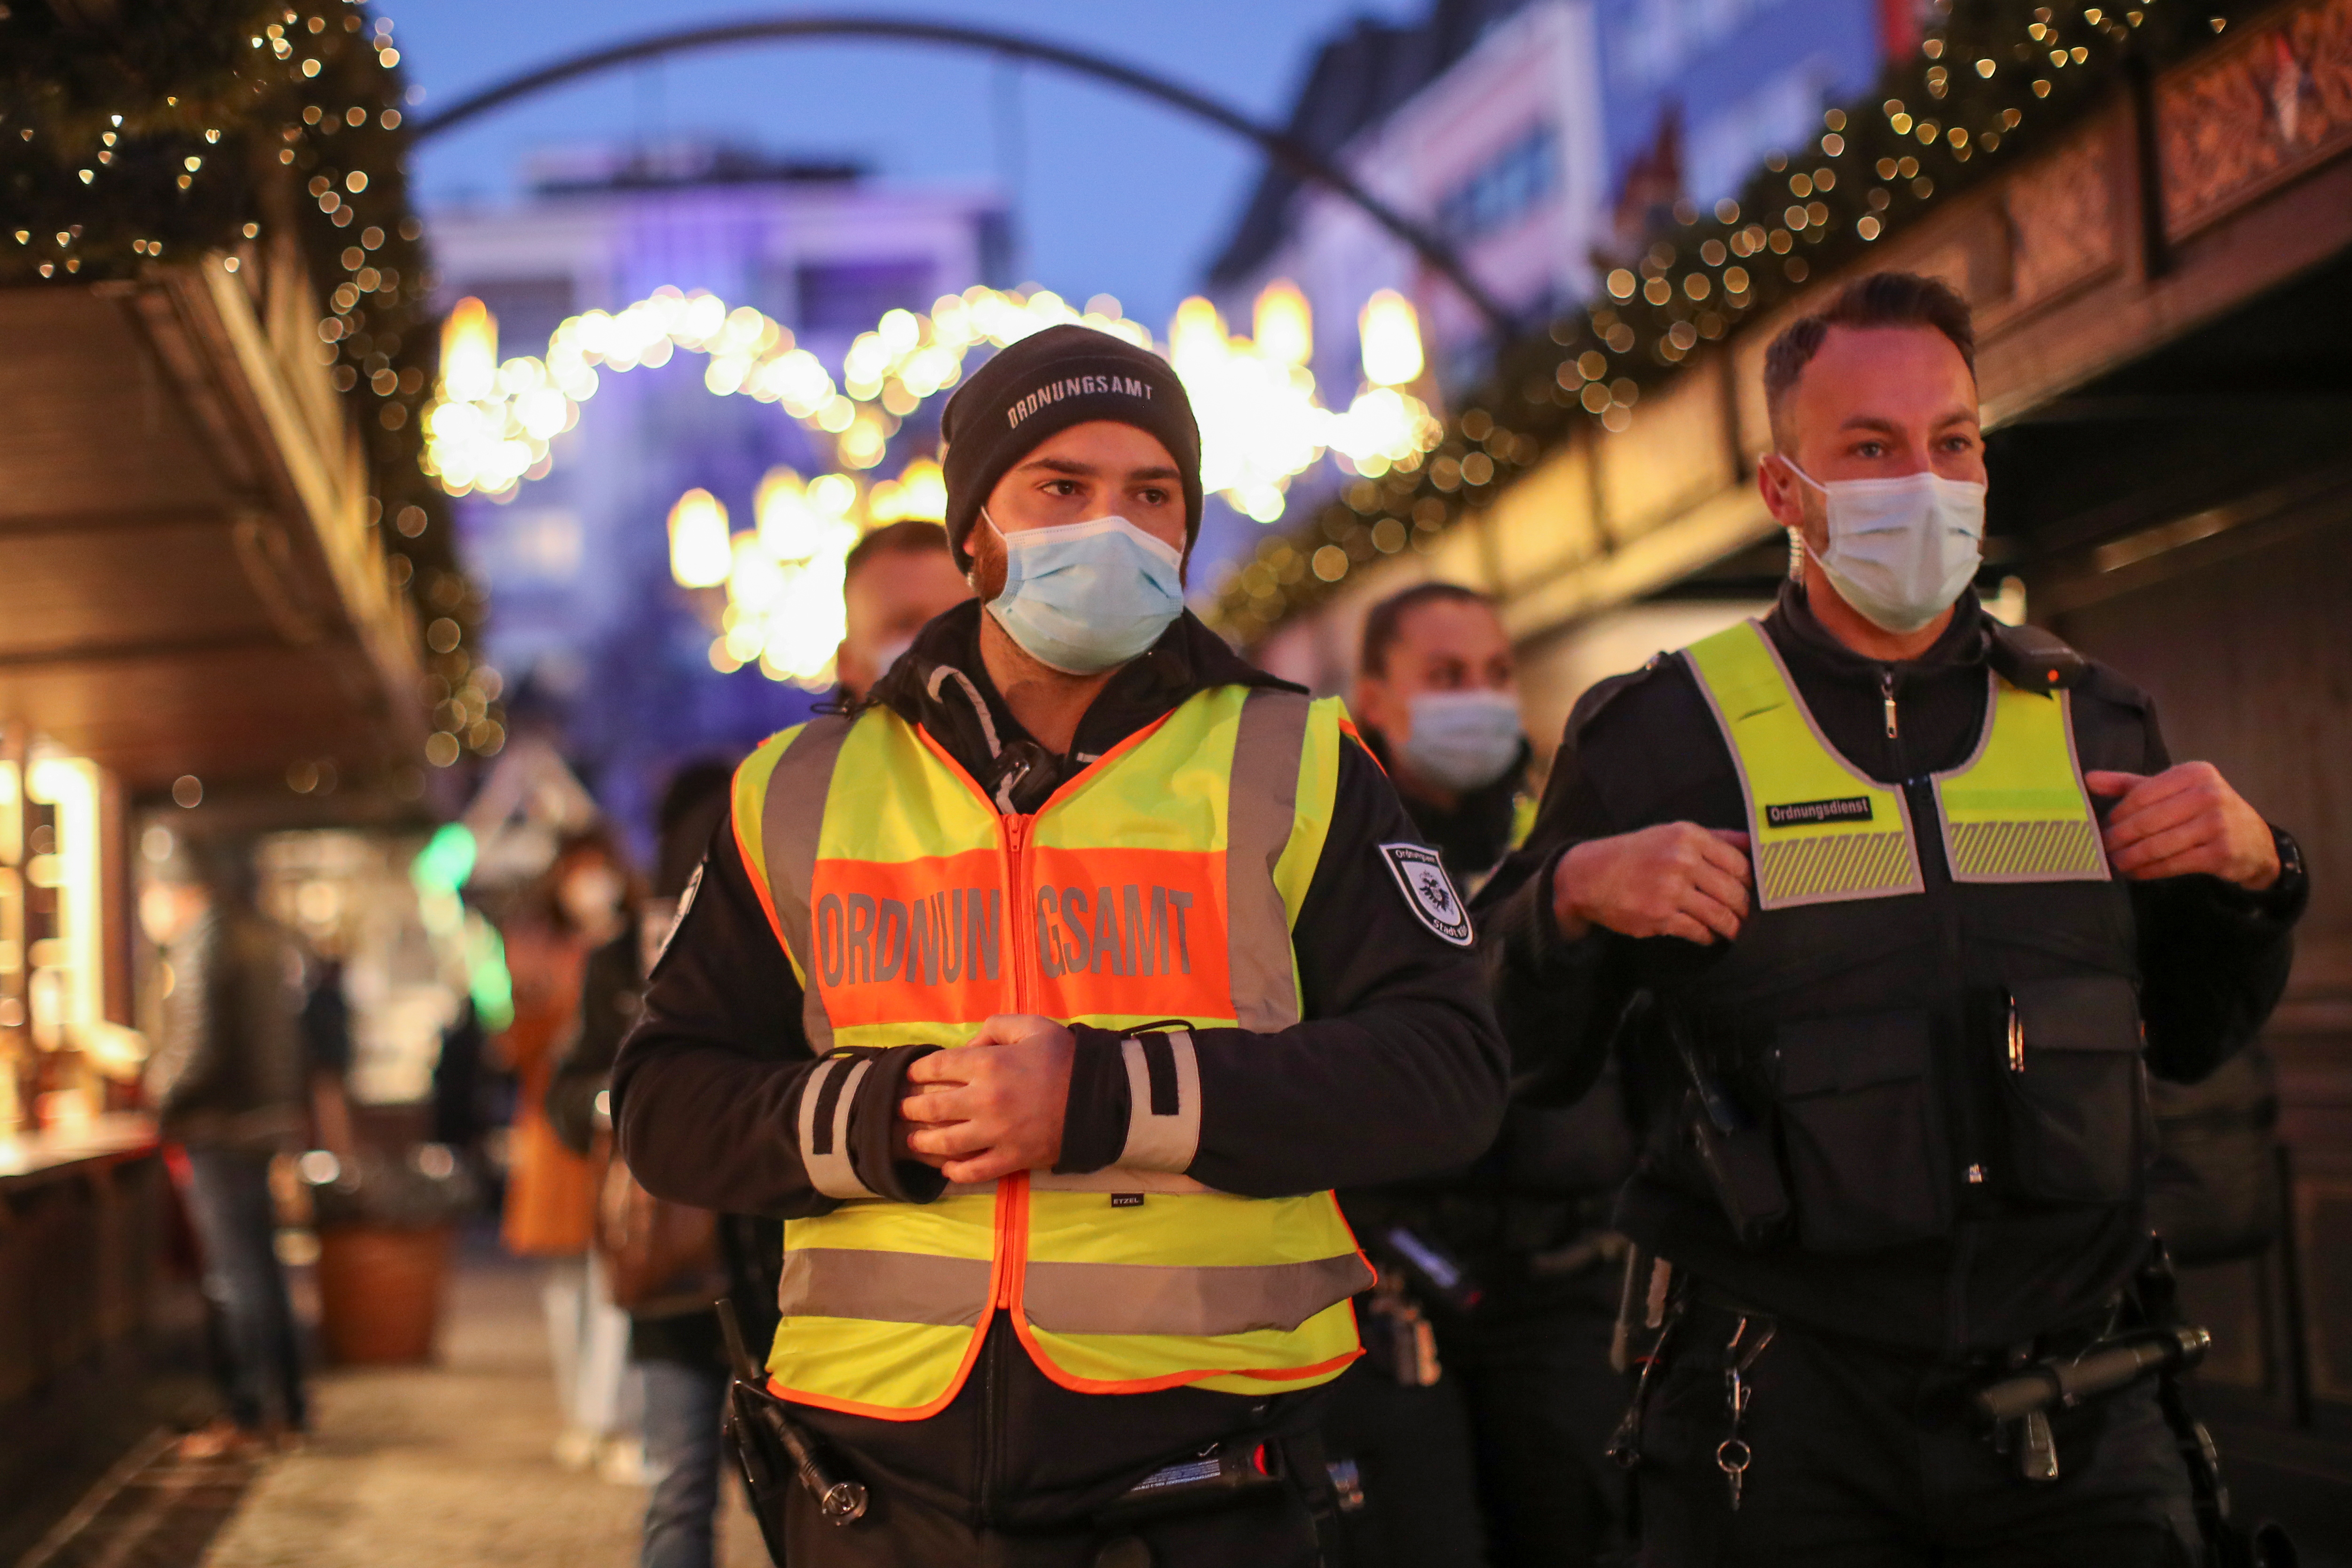 Medlemmar av byrån för allmän ordning går på en julmarknad, där de kontrollerar "2G"-regeln som tillåter endast de som vaccinerats eller tillfrisknat från coronaviruset (COVID-19) att besöka, i Köln, Tyskland, den 22 november 2021. REUTERS /Thilo Schmuelgen